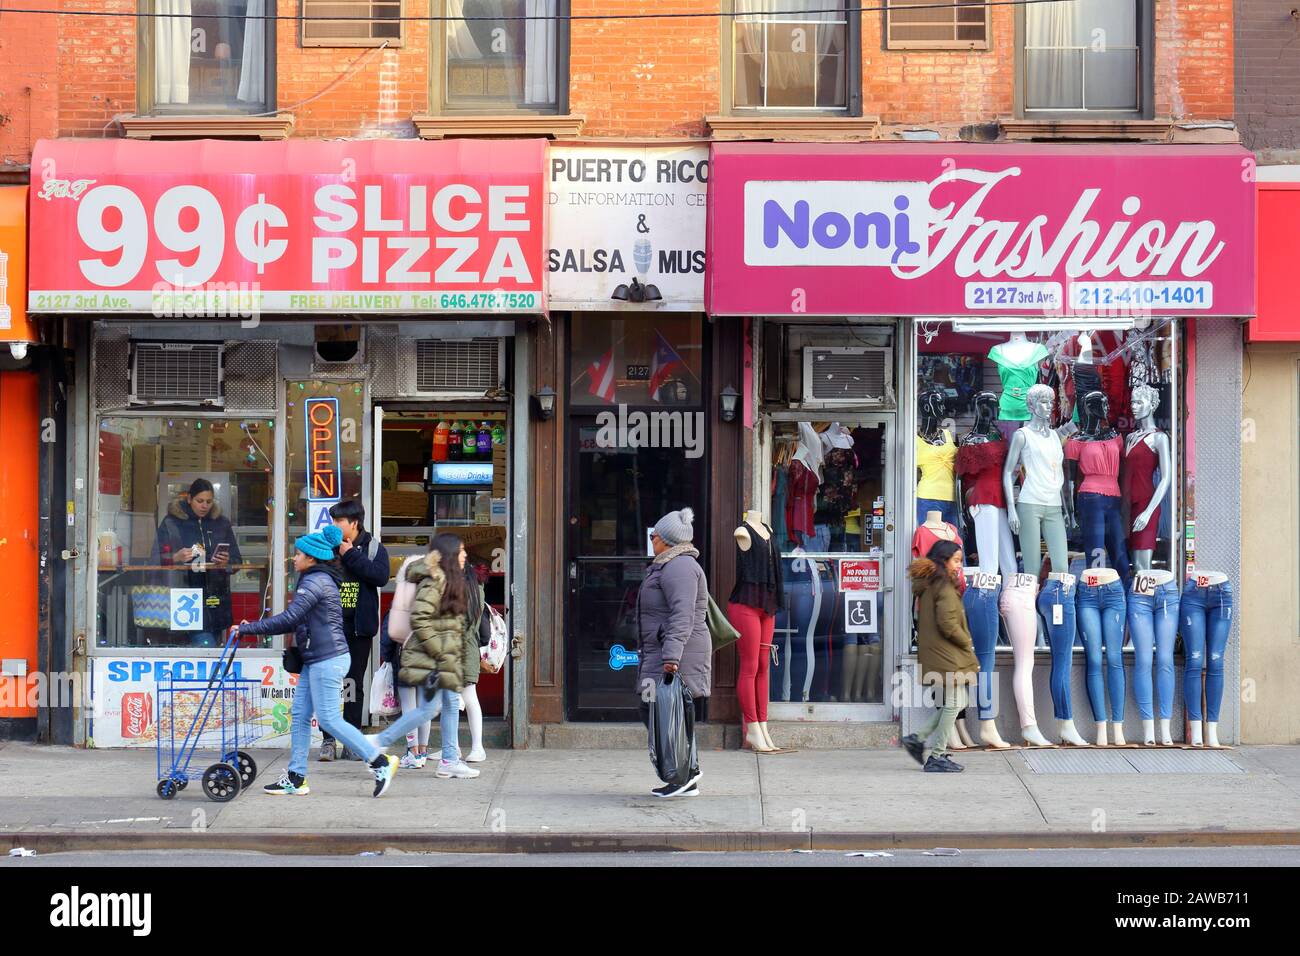 99 Pizza, Noni Fashion, 2127 3rd Ave, New York, NYC foto di una pizzeria e di un negozio di abbigliamento nel quartiere East Harlem di Manhattan. Foto Stock